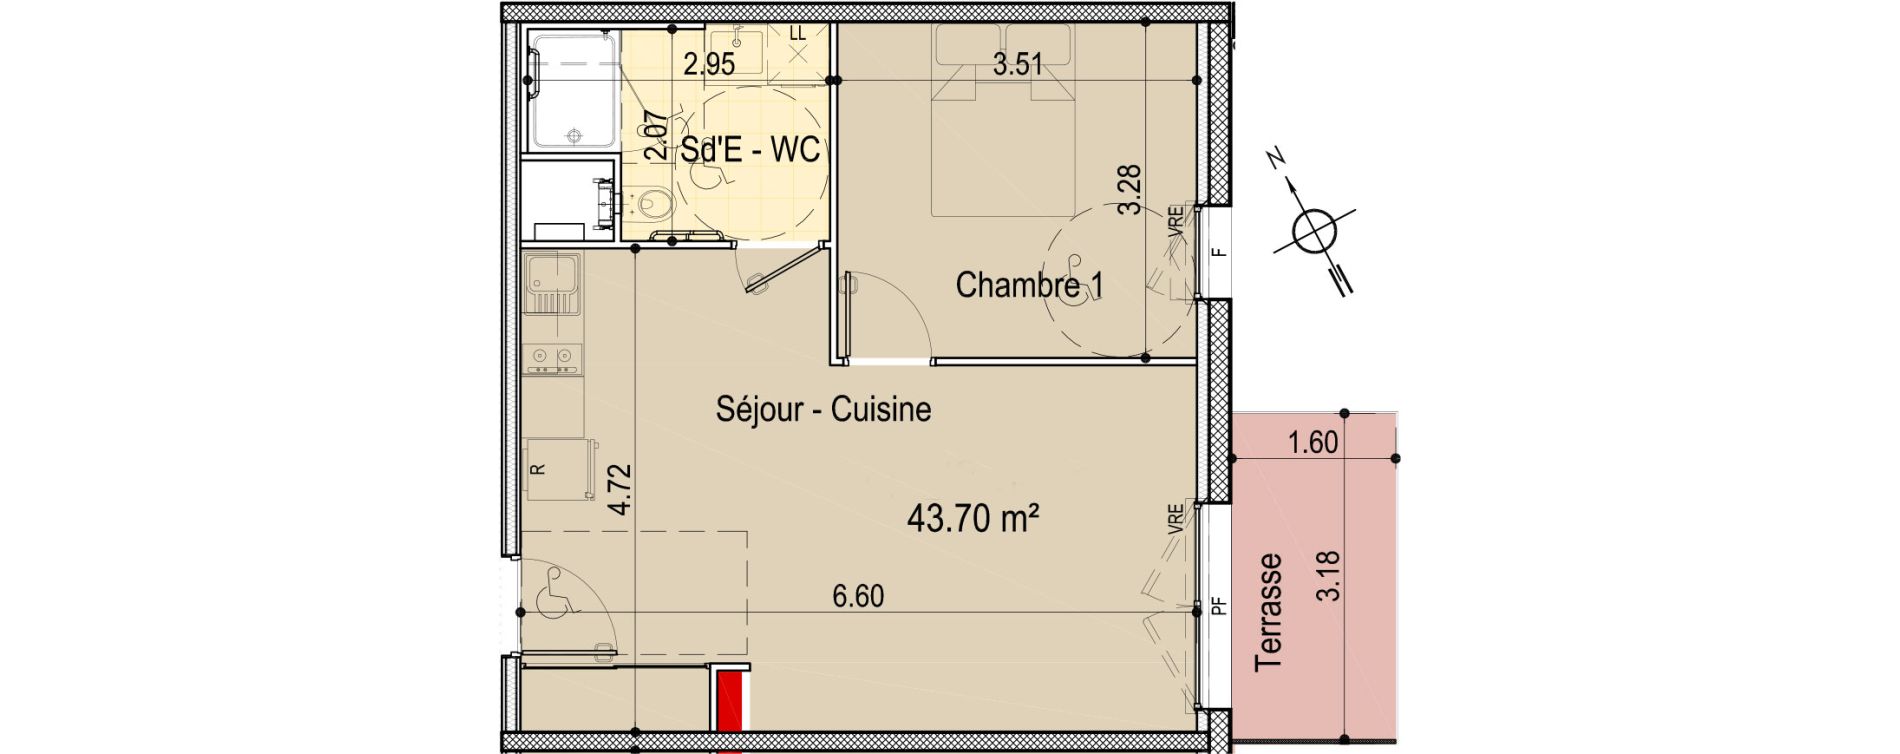 Appartement T2 de 43,70 m2 aux Sables-D'Olonne Le chateau d olonne